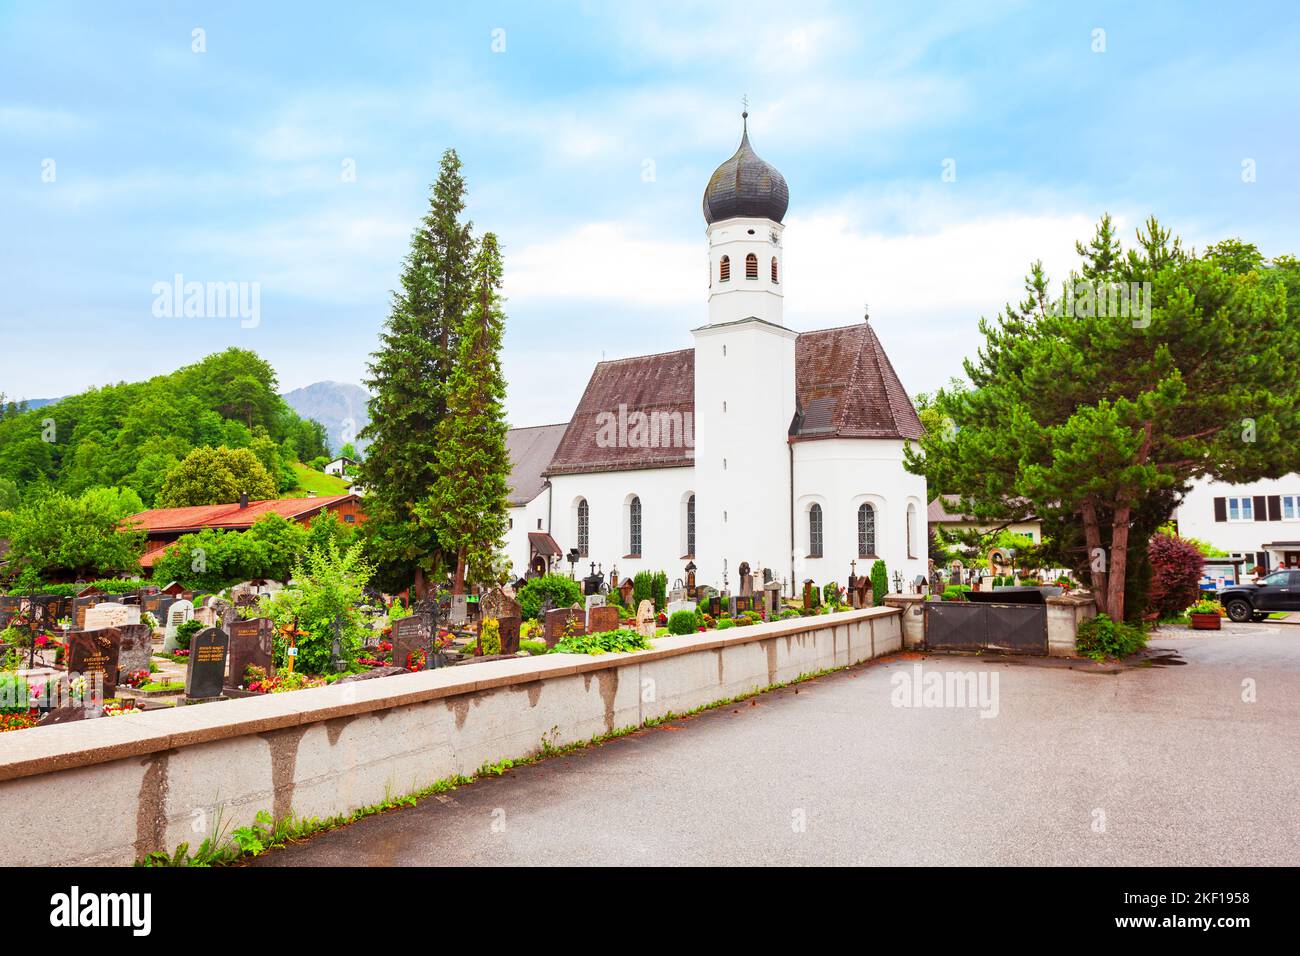 La chiesa parrocchiale cattolica romana di San Michele si trova nella città di Kochel am See presso il Kochelsee o il lago di Kochel in Baviera, Germania Foto Stock